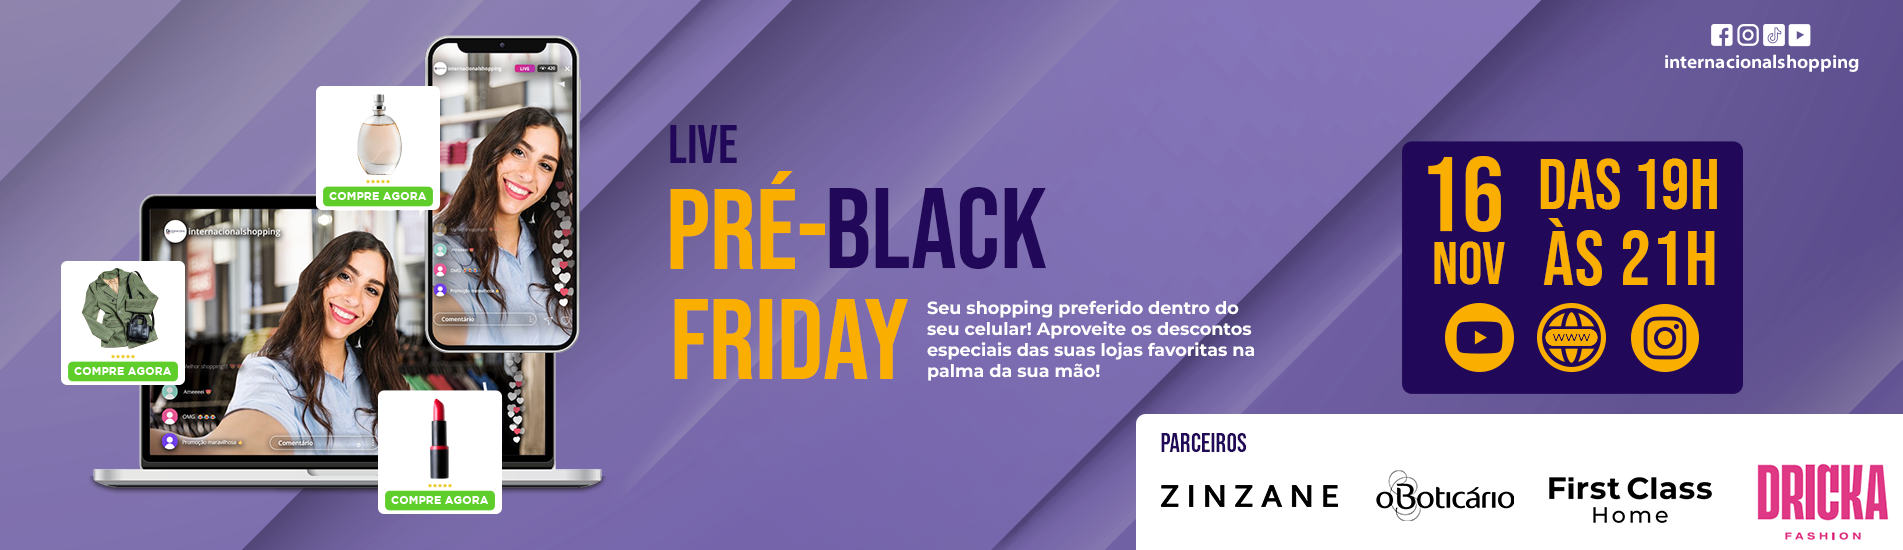 Live Pré-Black Friday do Inter!!